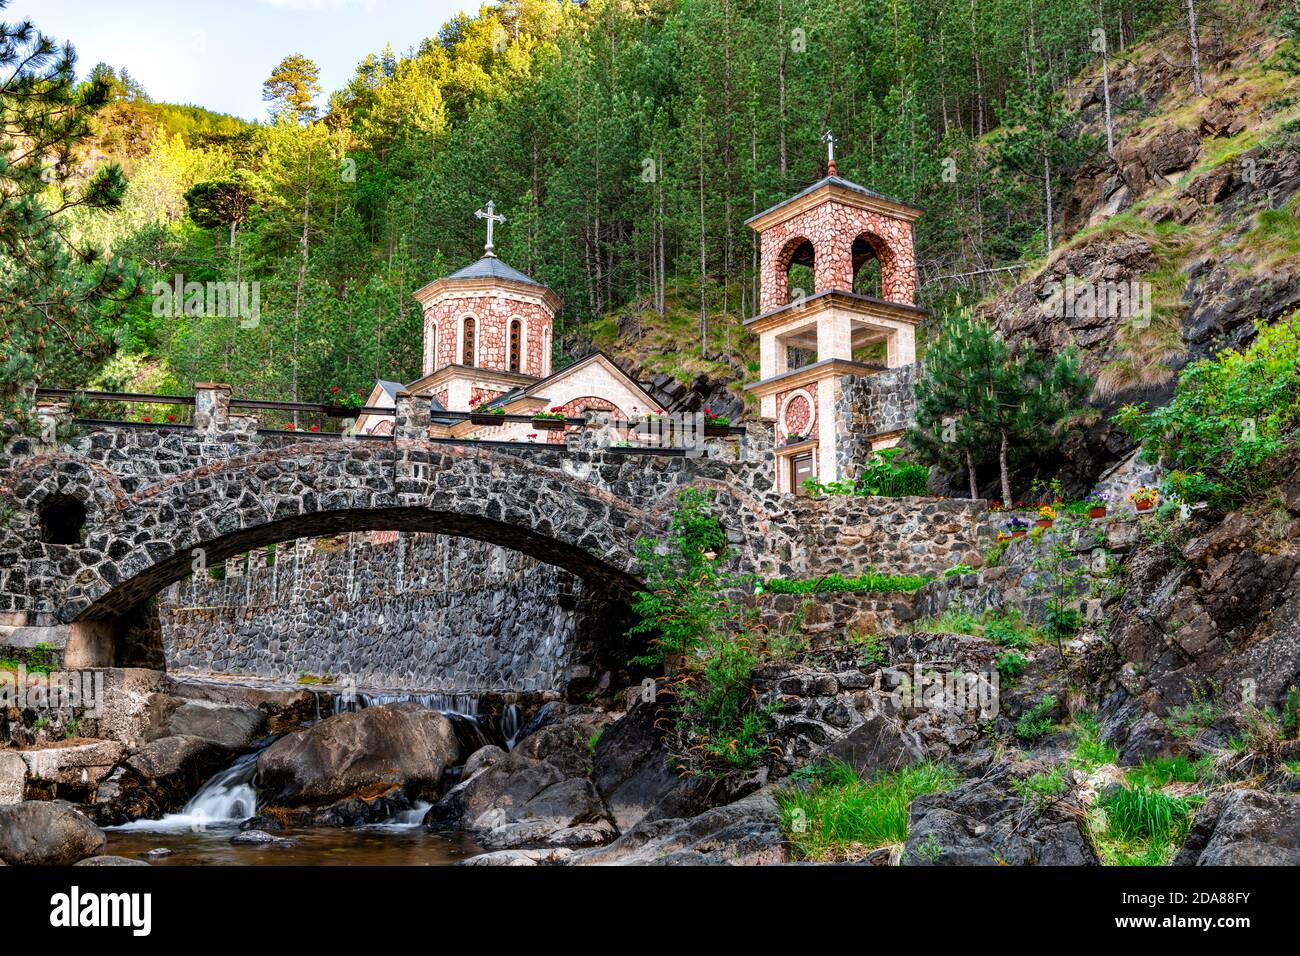 L'église Saint-Jean-Baptiste, Sveti Jovan Krstitelj sur Mokra Gora, est située à la source de Bela Voda, sur la rive gauche de la rivière Kamesina Banque D'Images